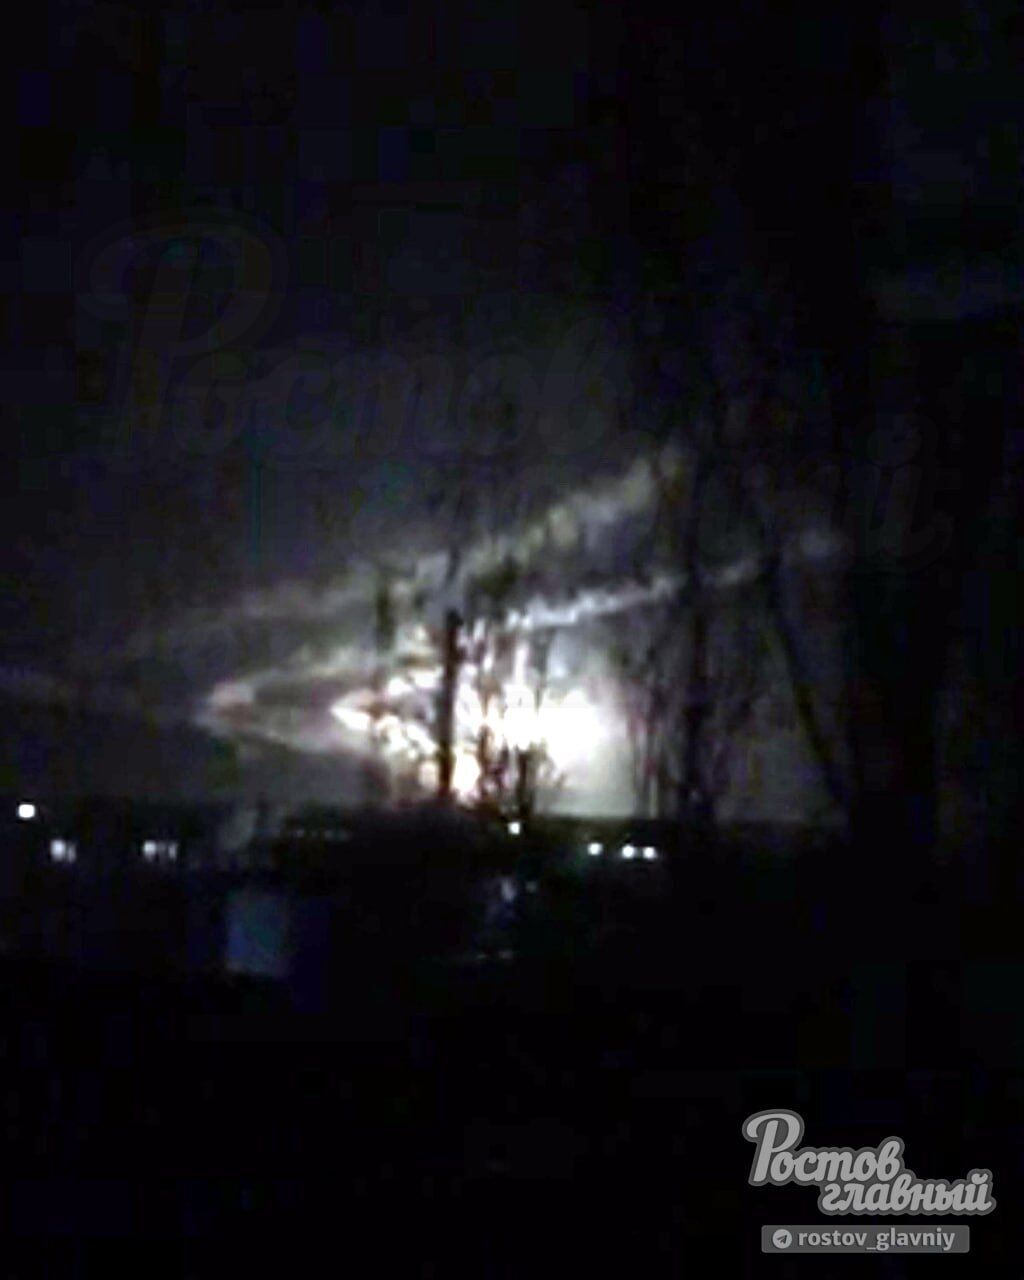 Ціллю були військові аеродроми: вночі прогриміли вибухи біля військових аеродромів у чотирьох містах росії (фото і відео)